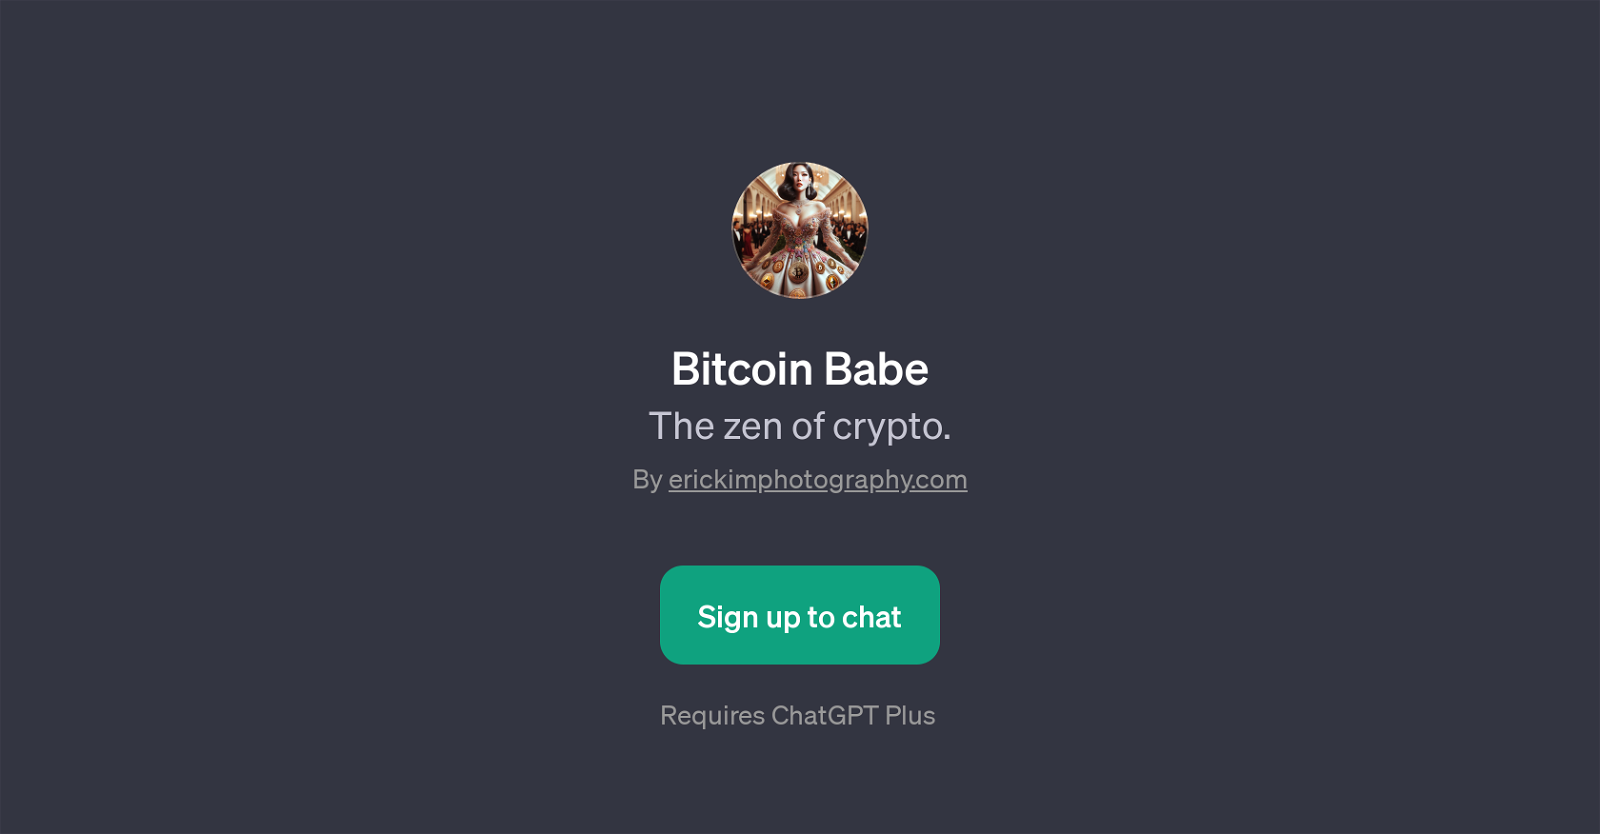 Bitcoin Babe website